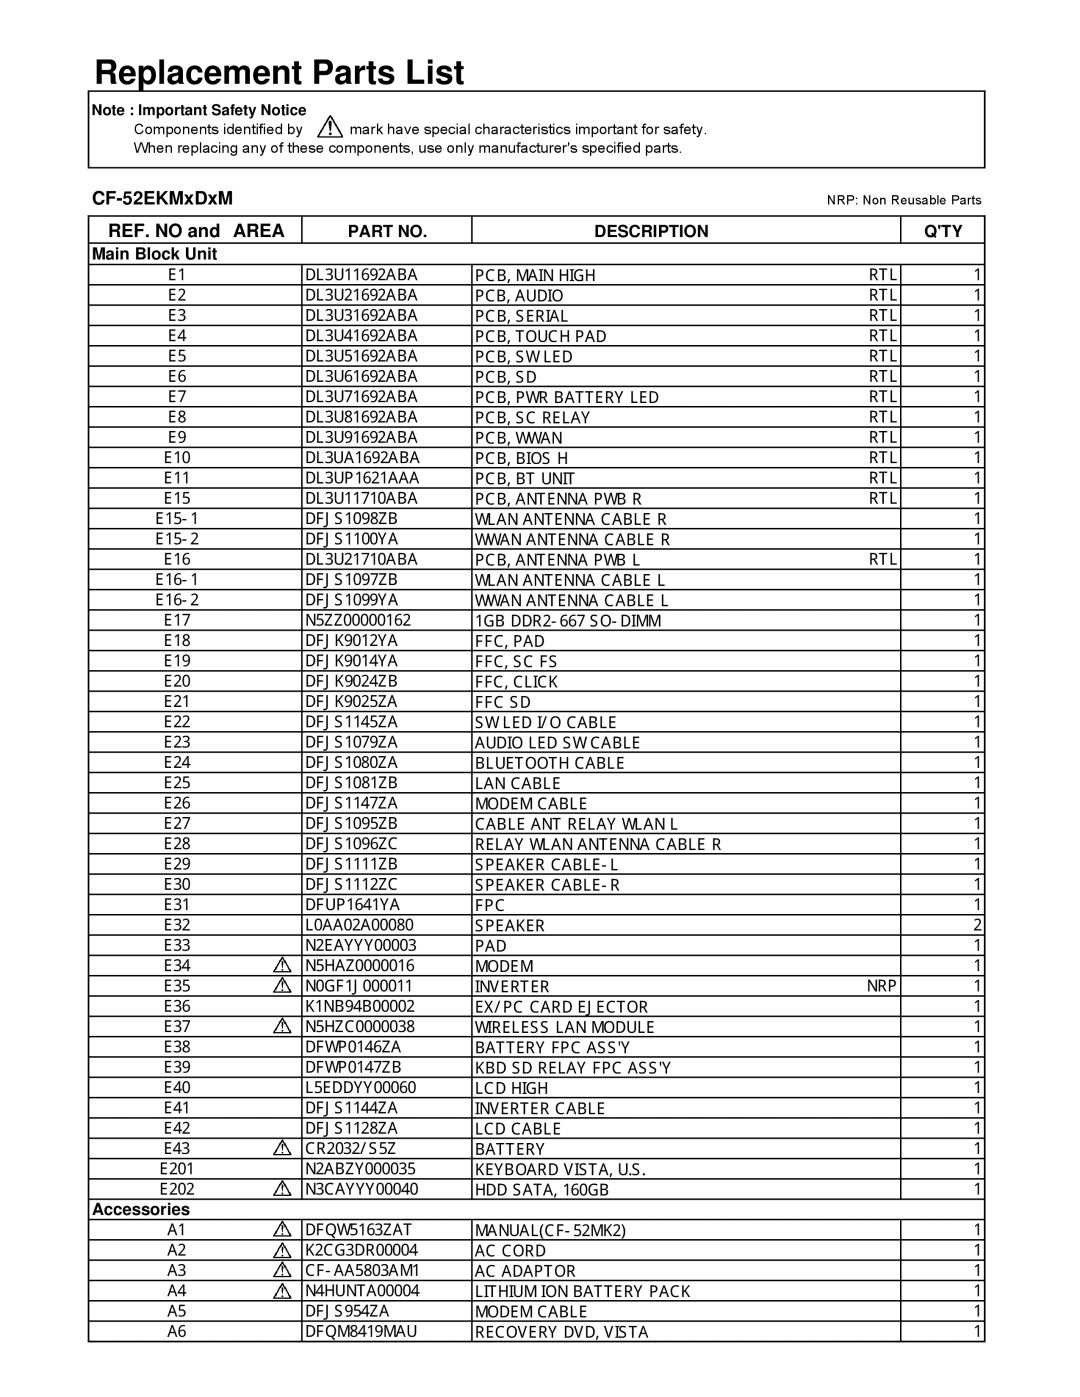 Panasonic CF-52EKM 1 D 2 M Replacement Parts List, CF-52EKMxDxM, REF. NO and AREA, Description, Main Block Unit 